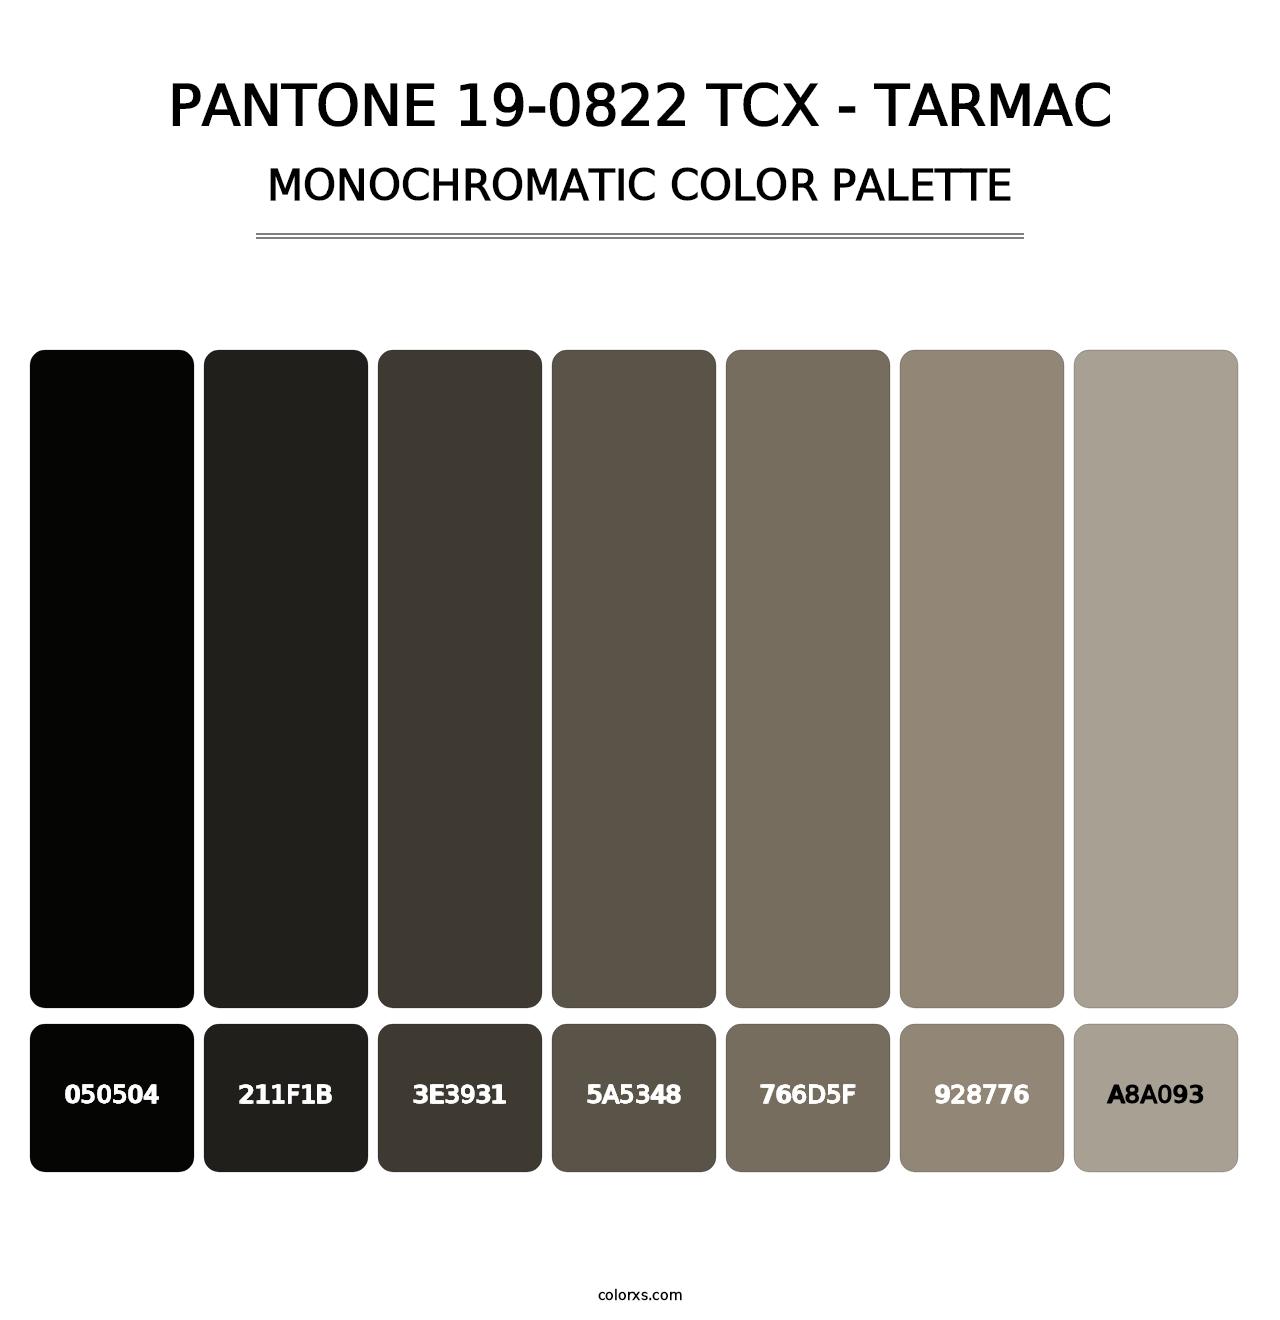 PANTONE 19-0822 TCX - Tarmac - Monochromatic Color Palette